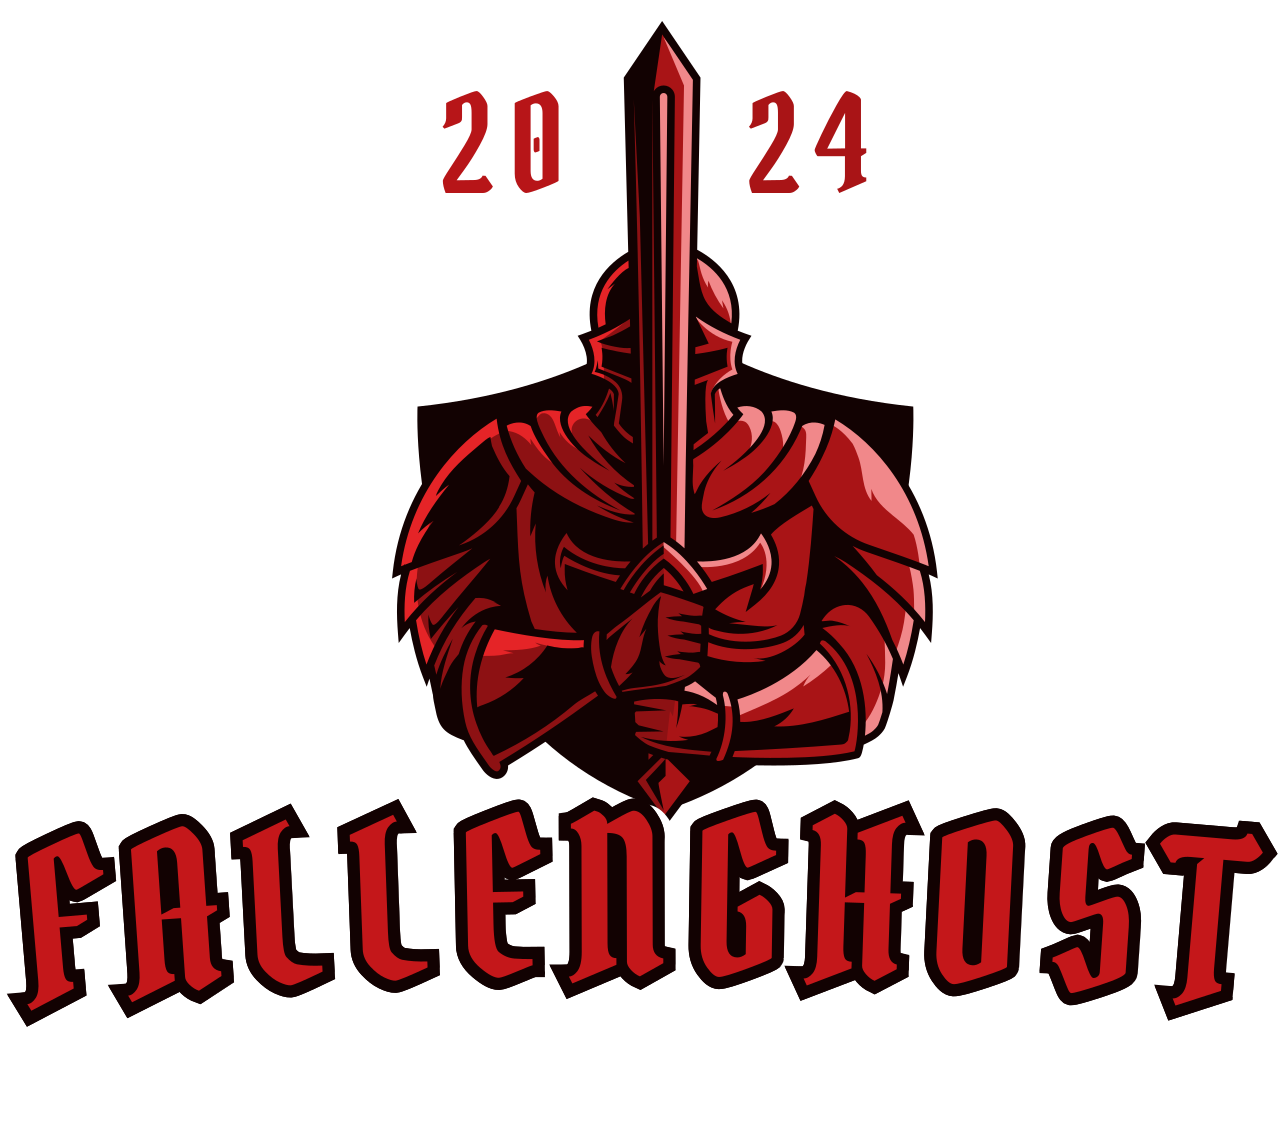 FallenGhost's logo